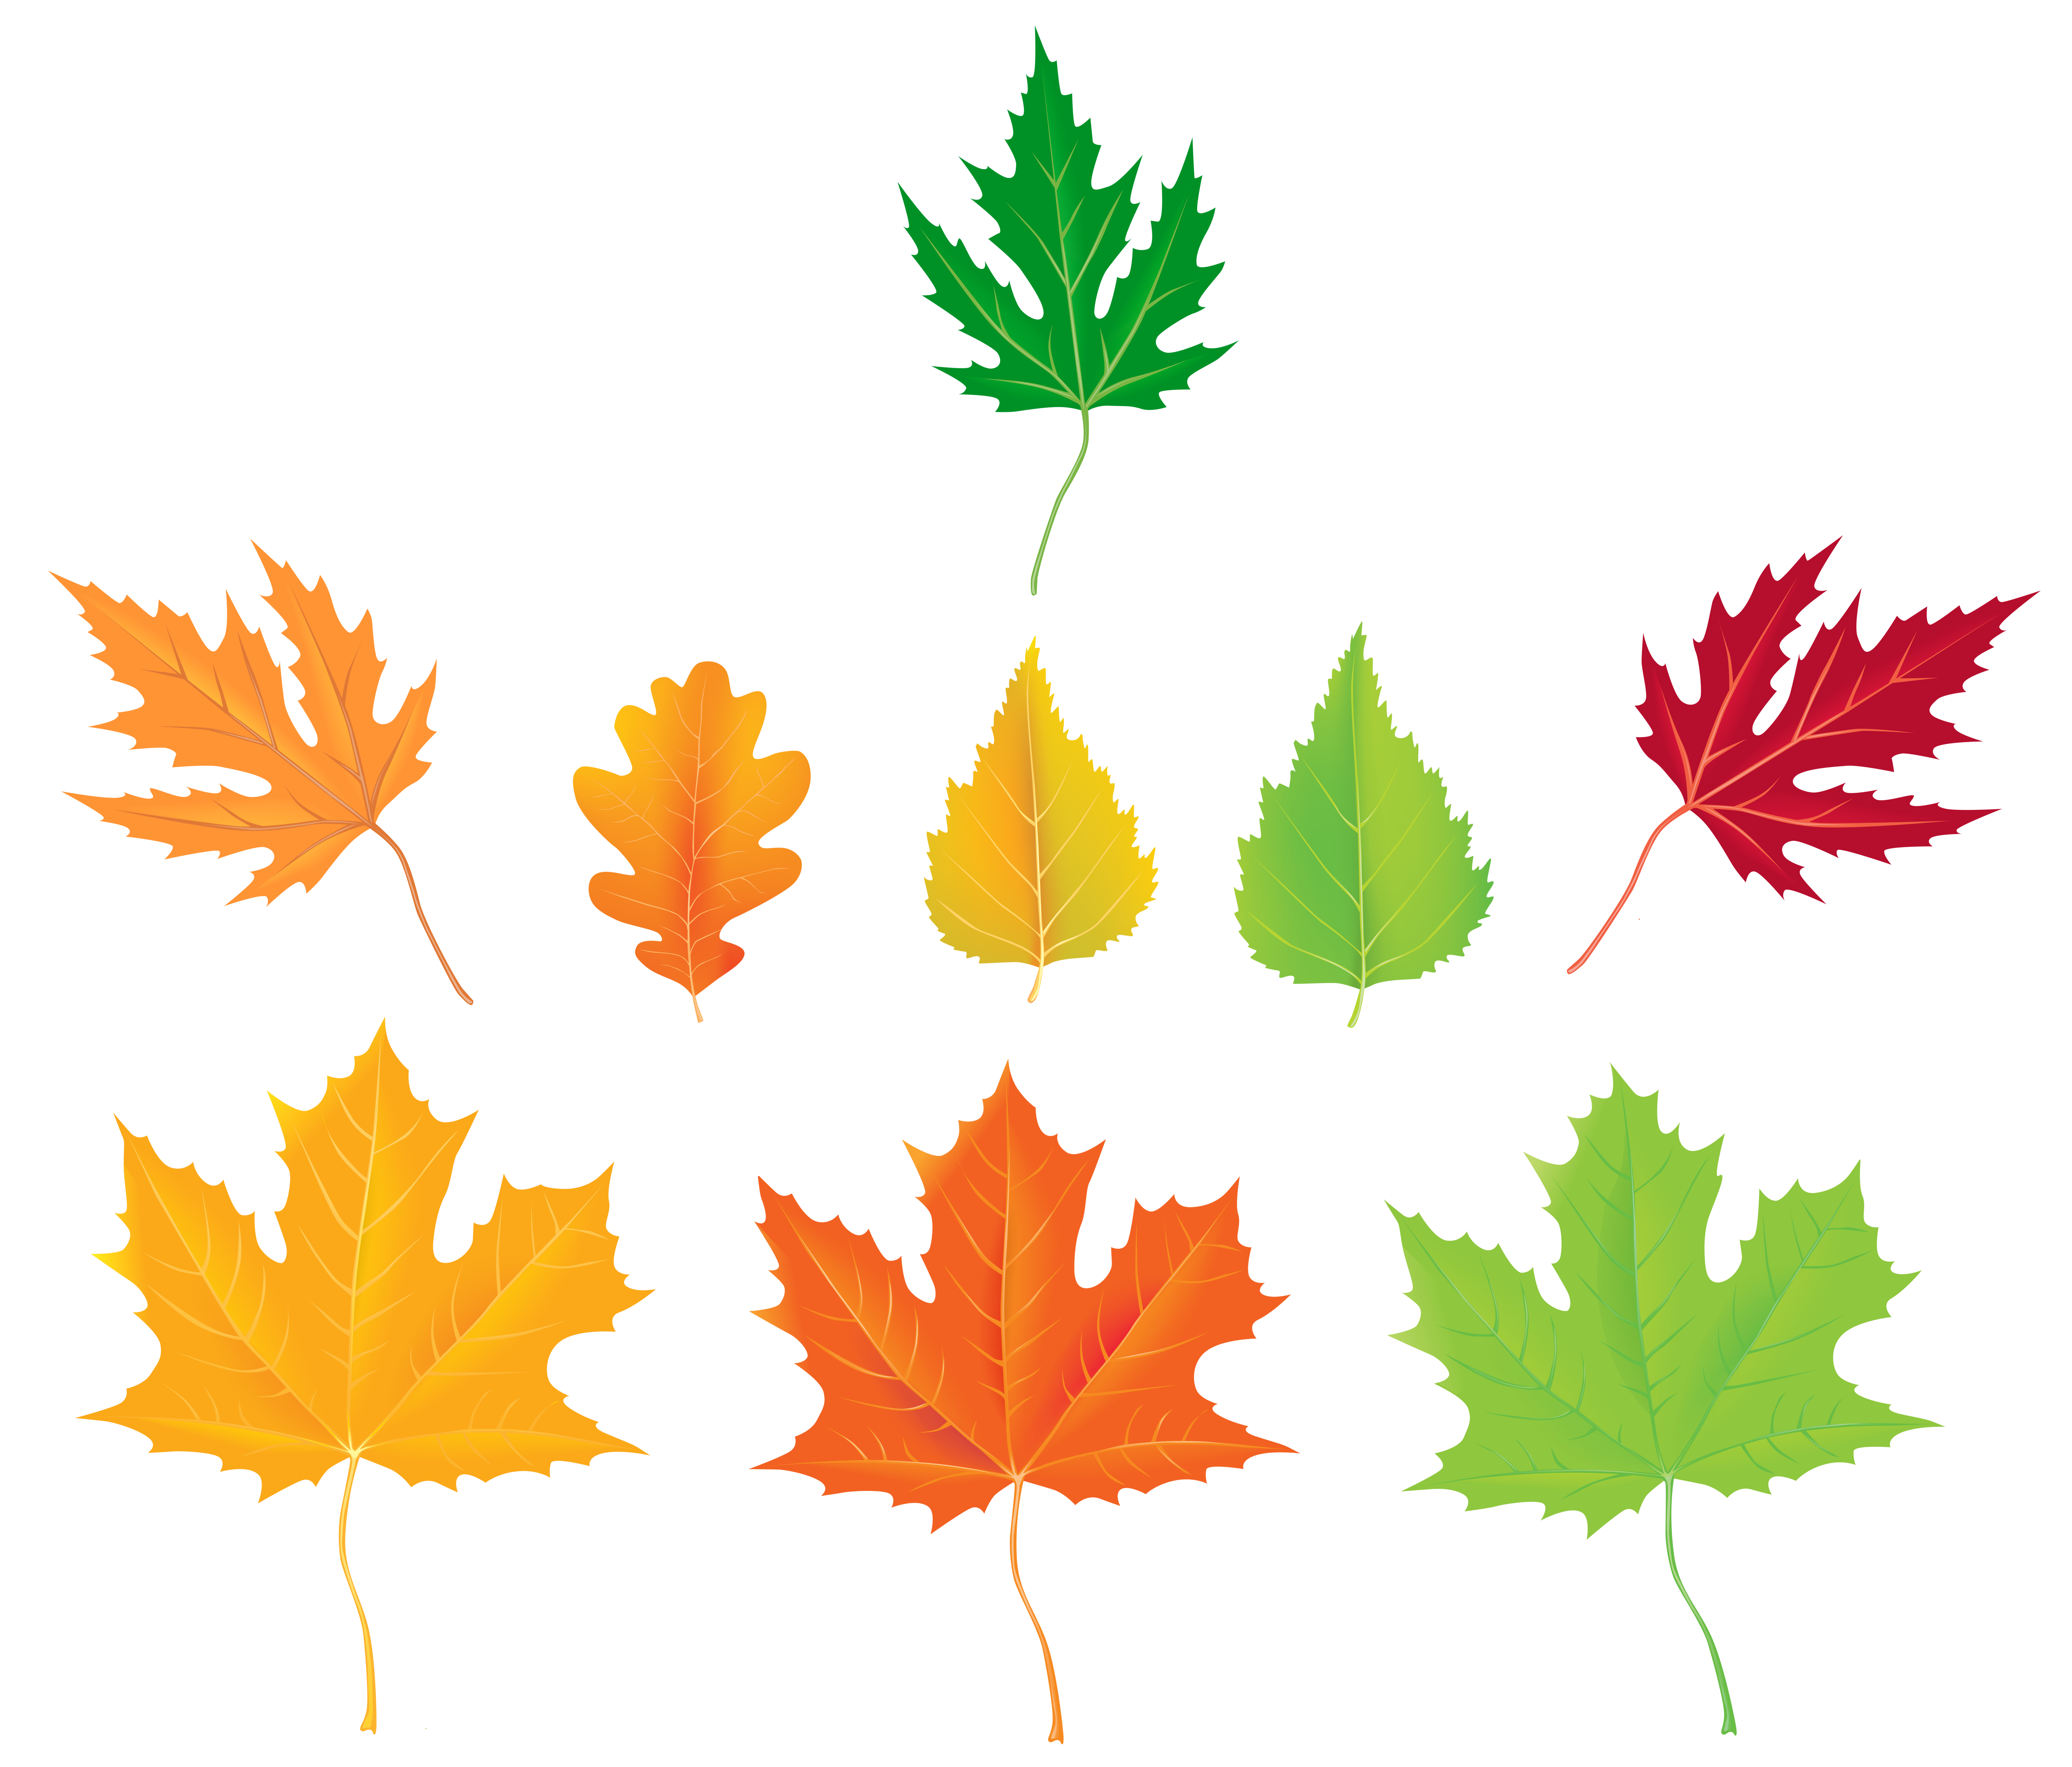 Autumn Maple Leaf PNG Clip Art - Best WEB Clipart